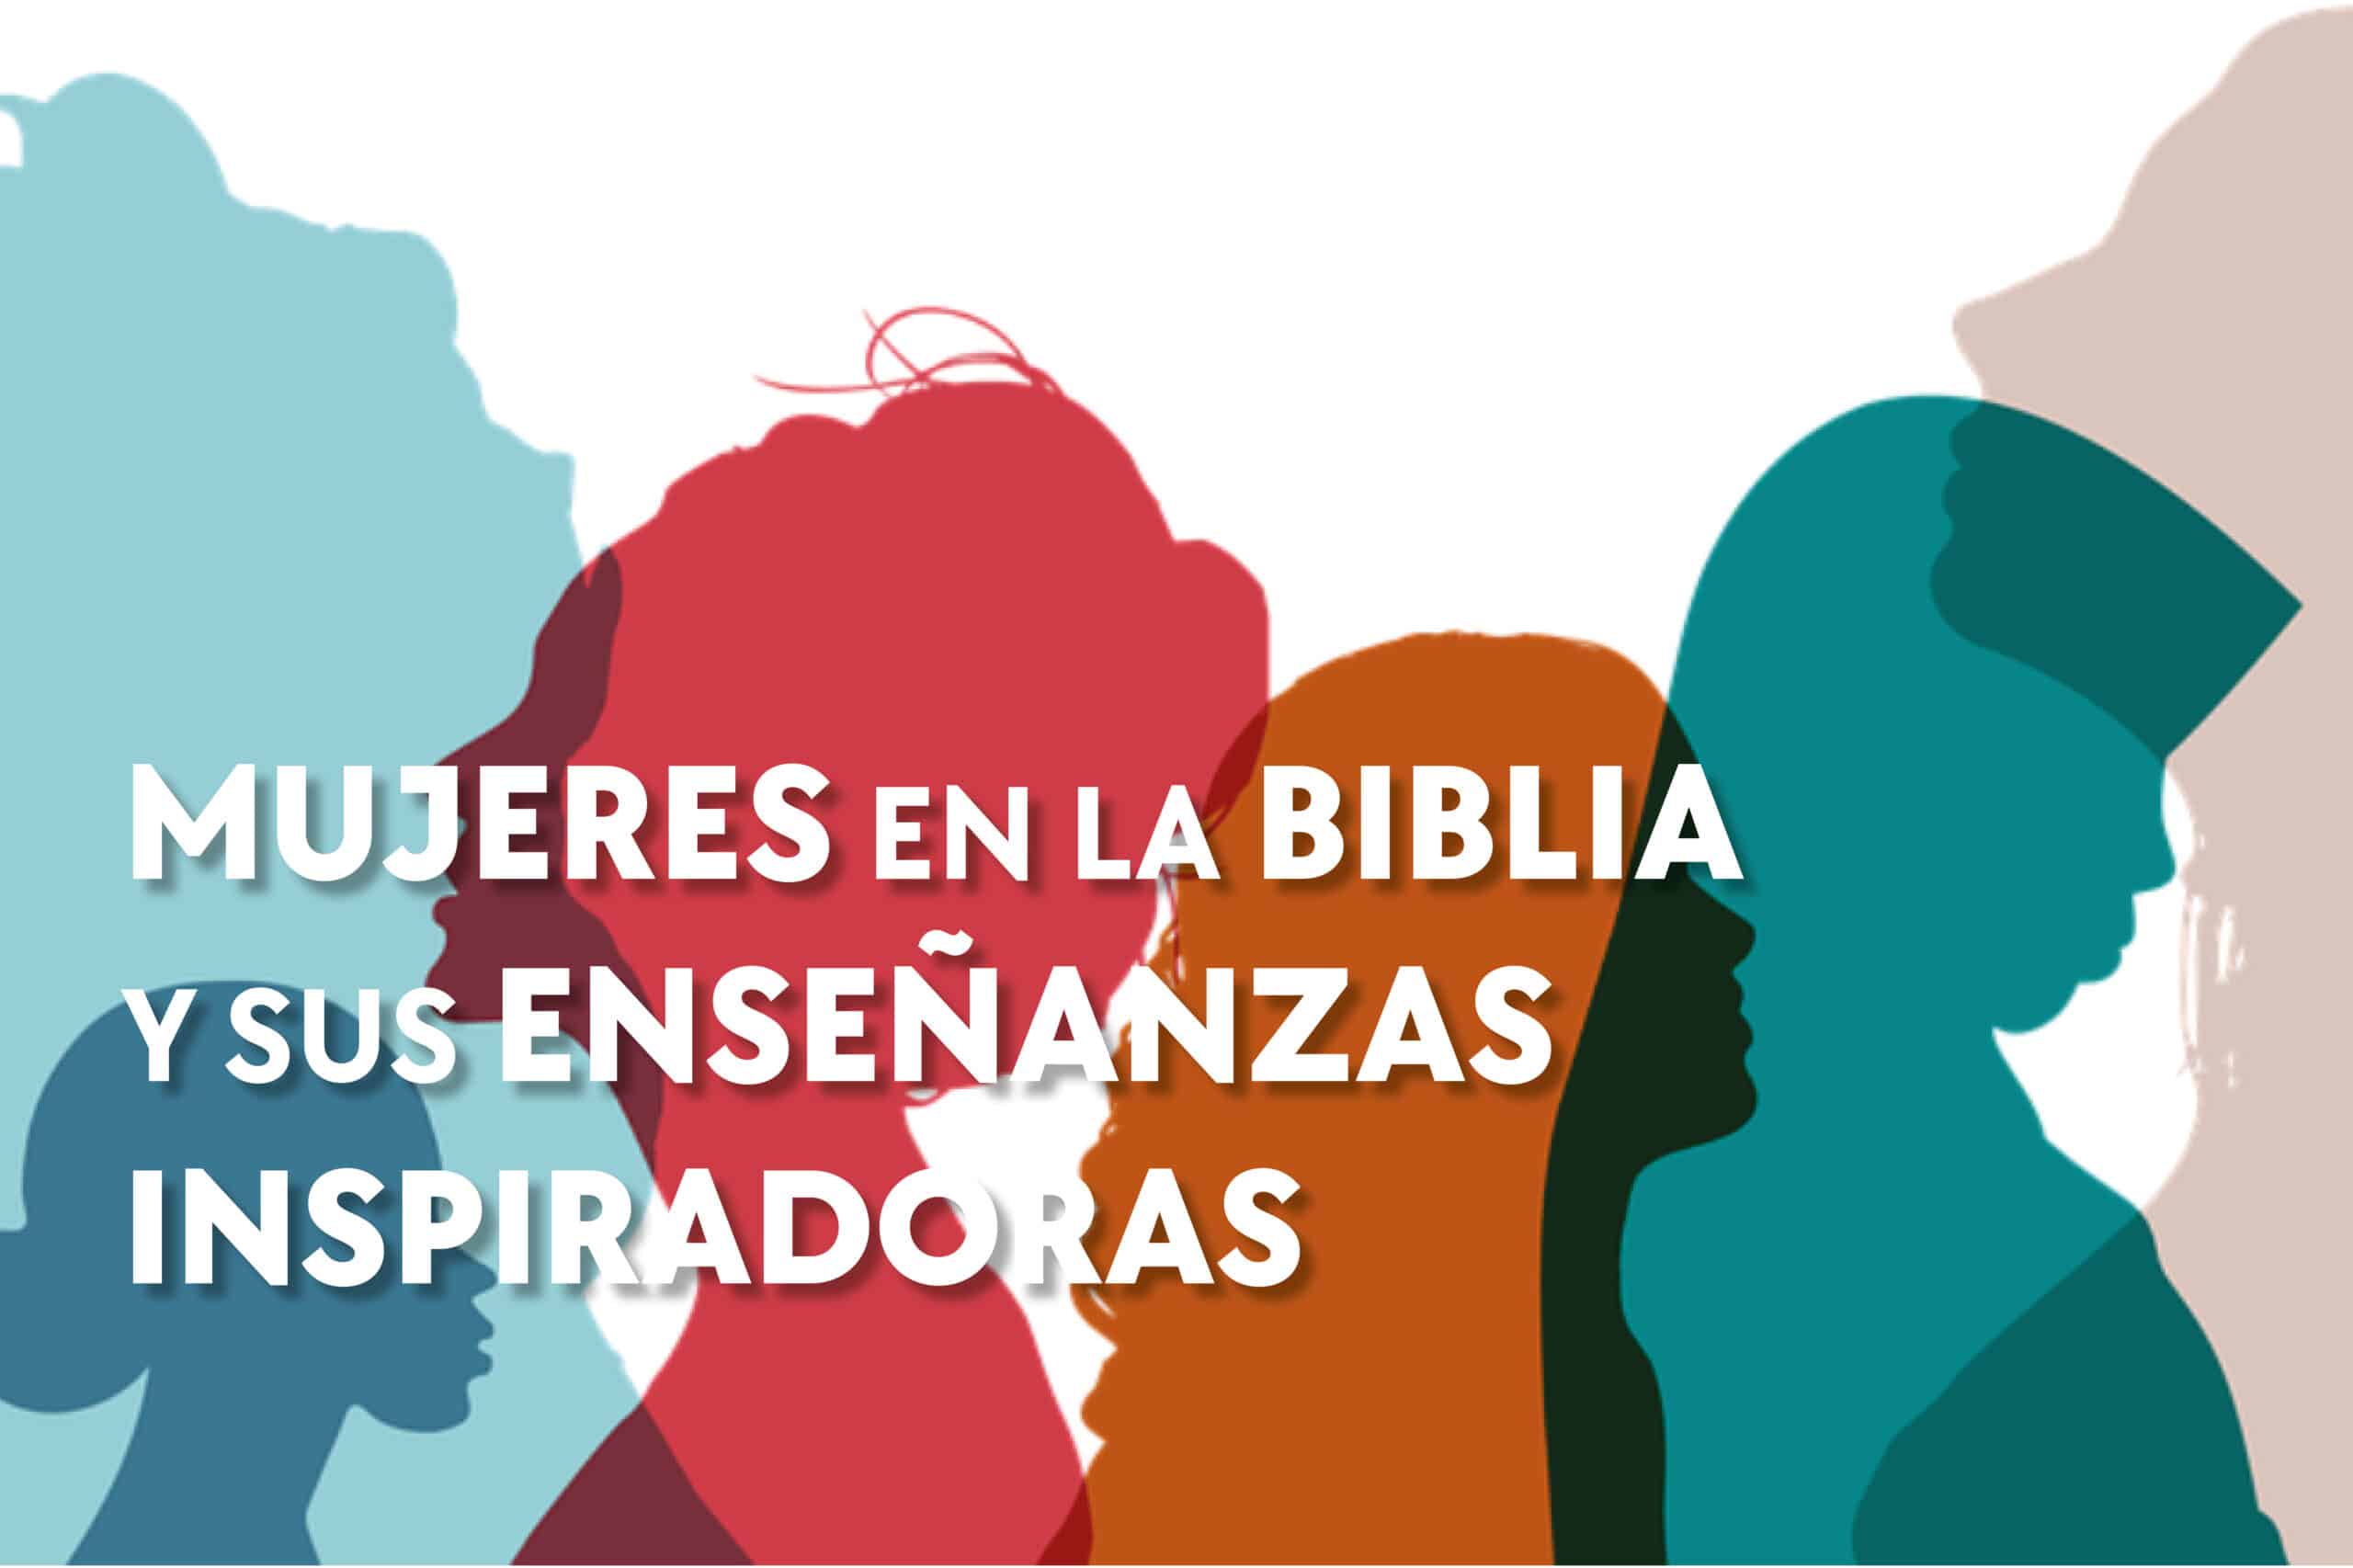 Mujeres en la Biblia: Listado completo y enseñanzas inspiradoras